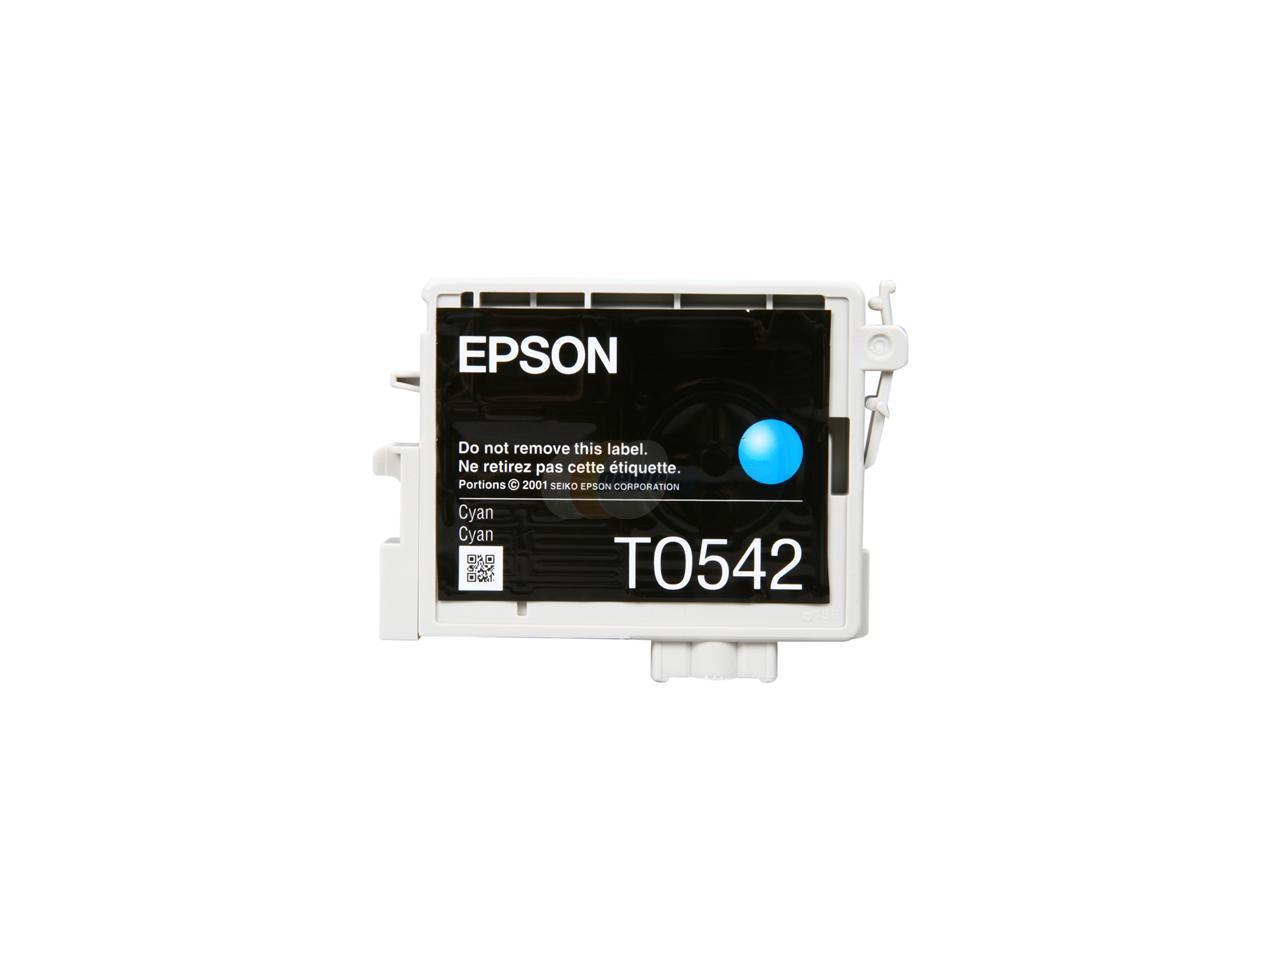 EPSON® T054220 Inkjet Cartridge for Stylus® Photo R800; Cyan